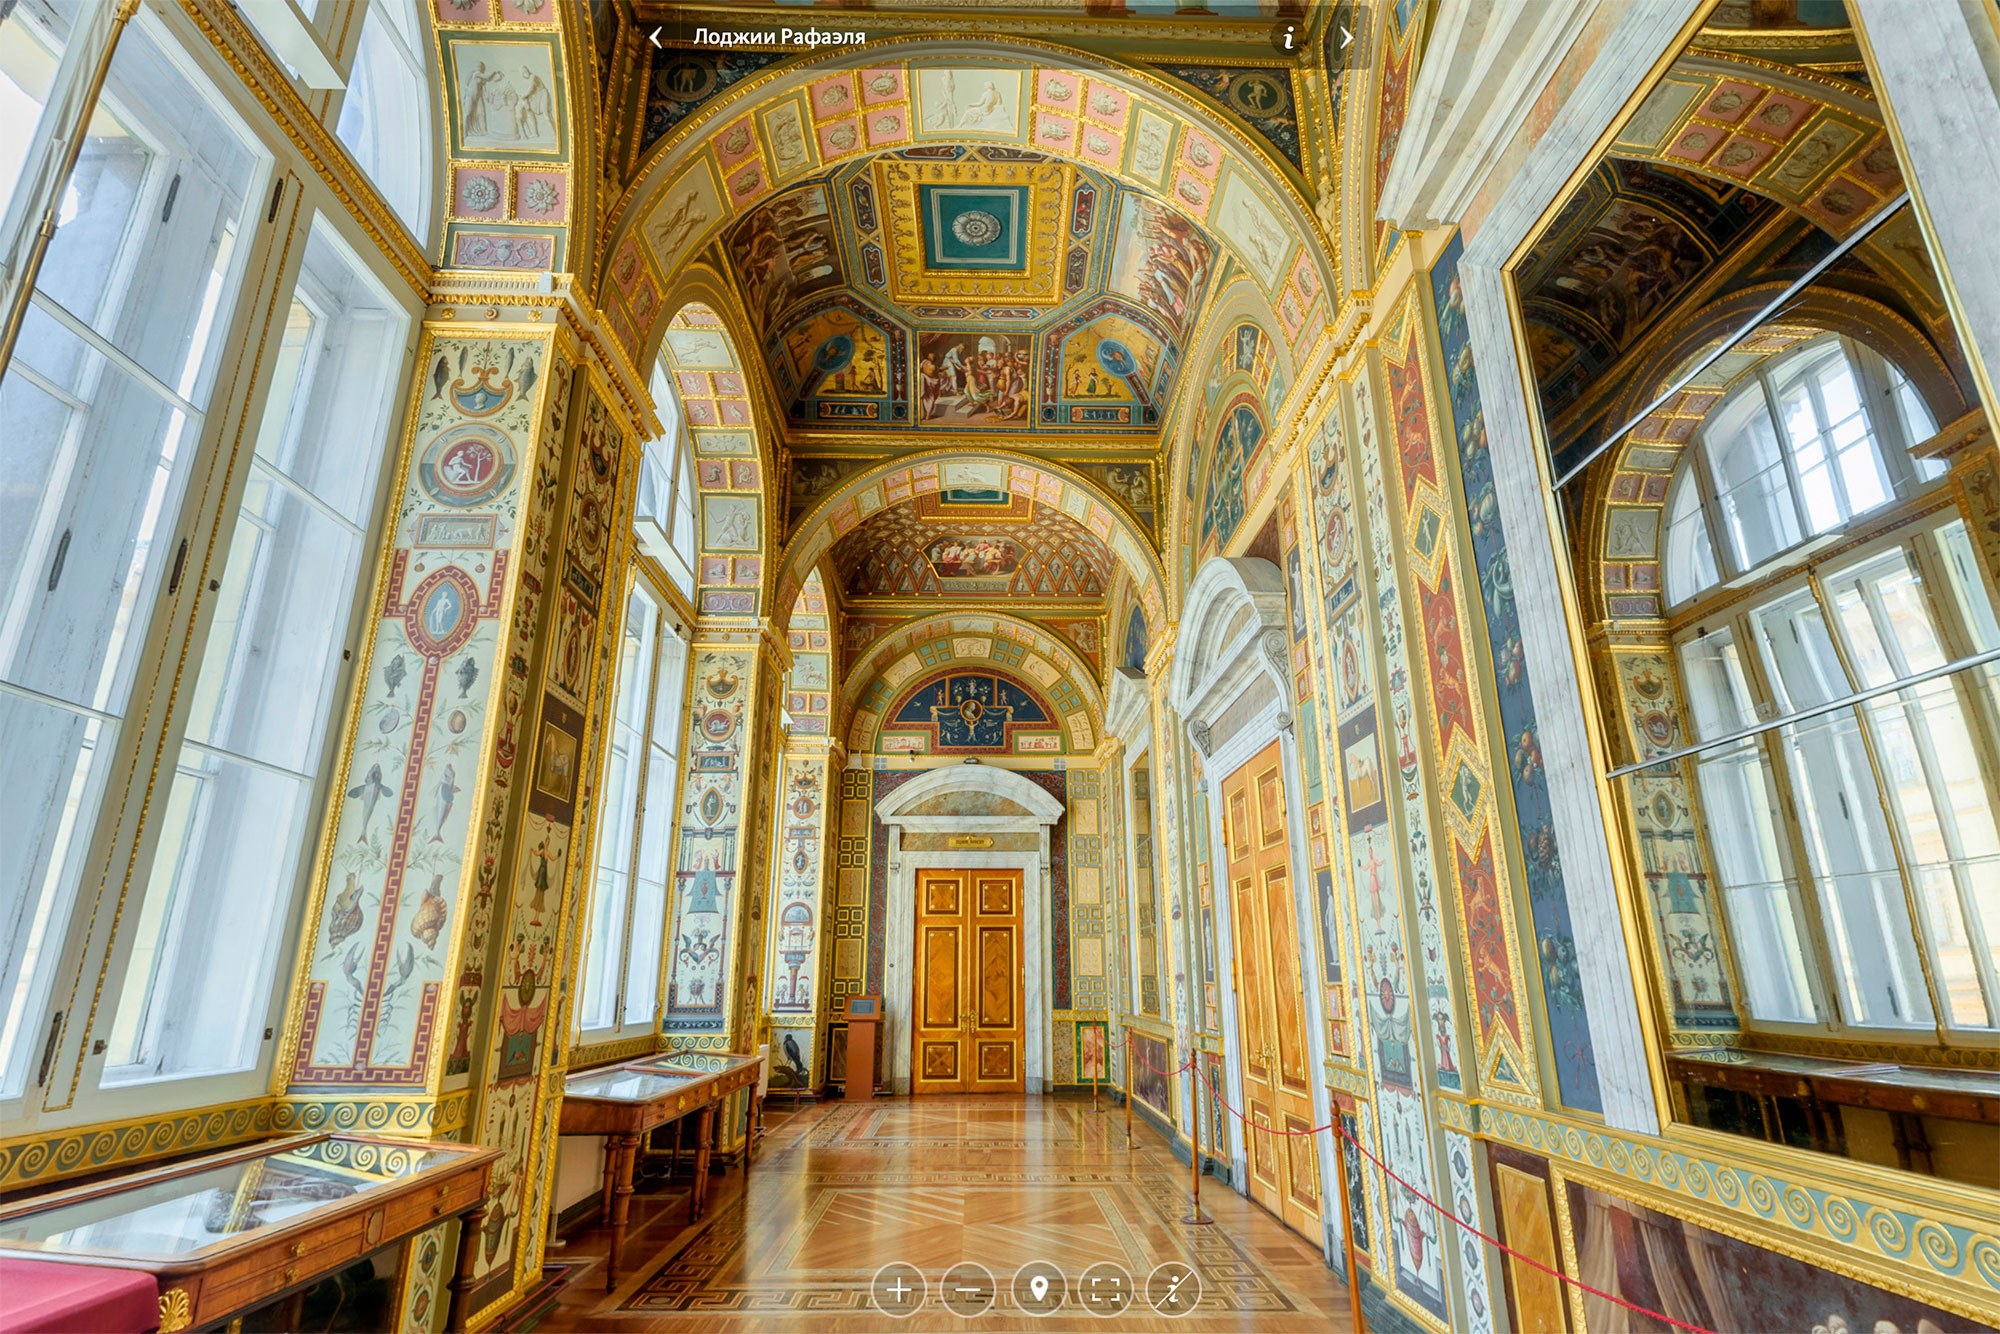 Когда будете прогуливаться по музею, советую рассмотреть интерьеры залов, например Лоджии Рафаэля